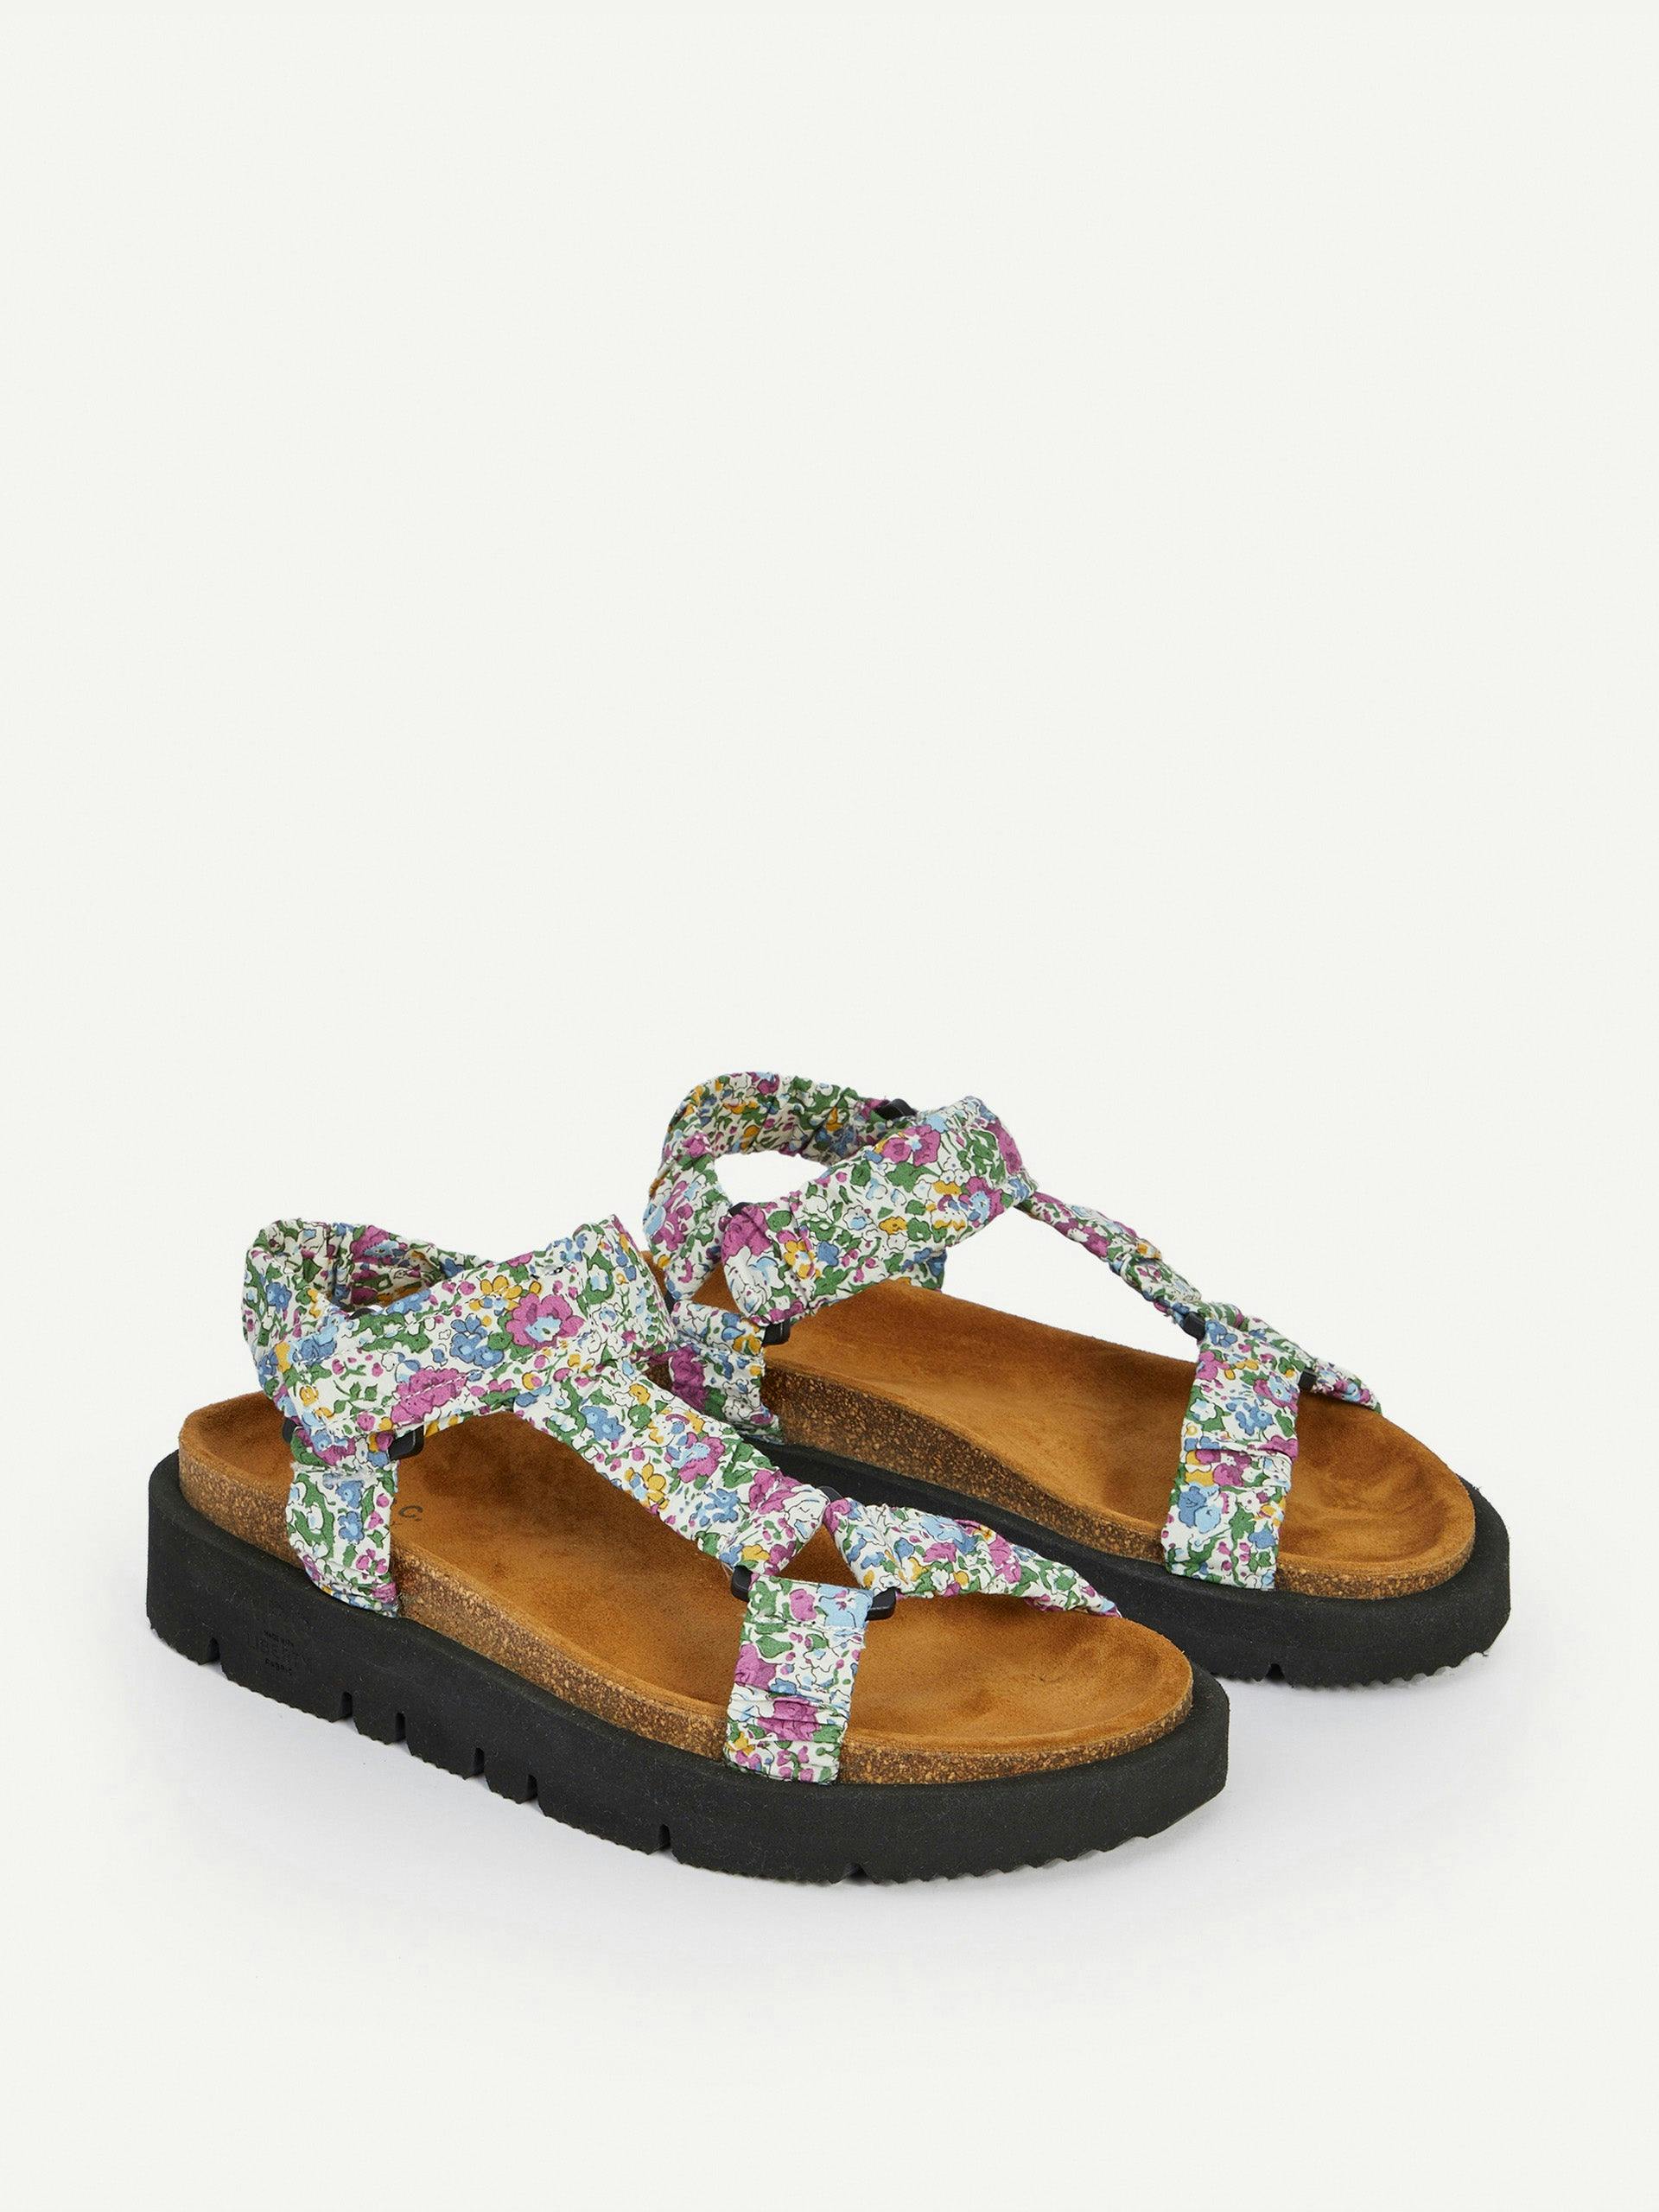 Cotton floral print sandals